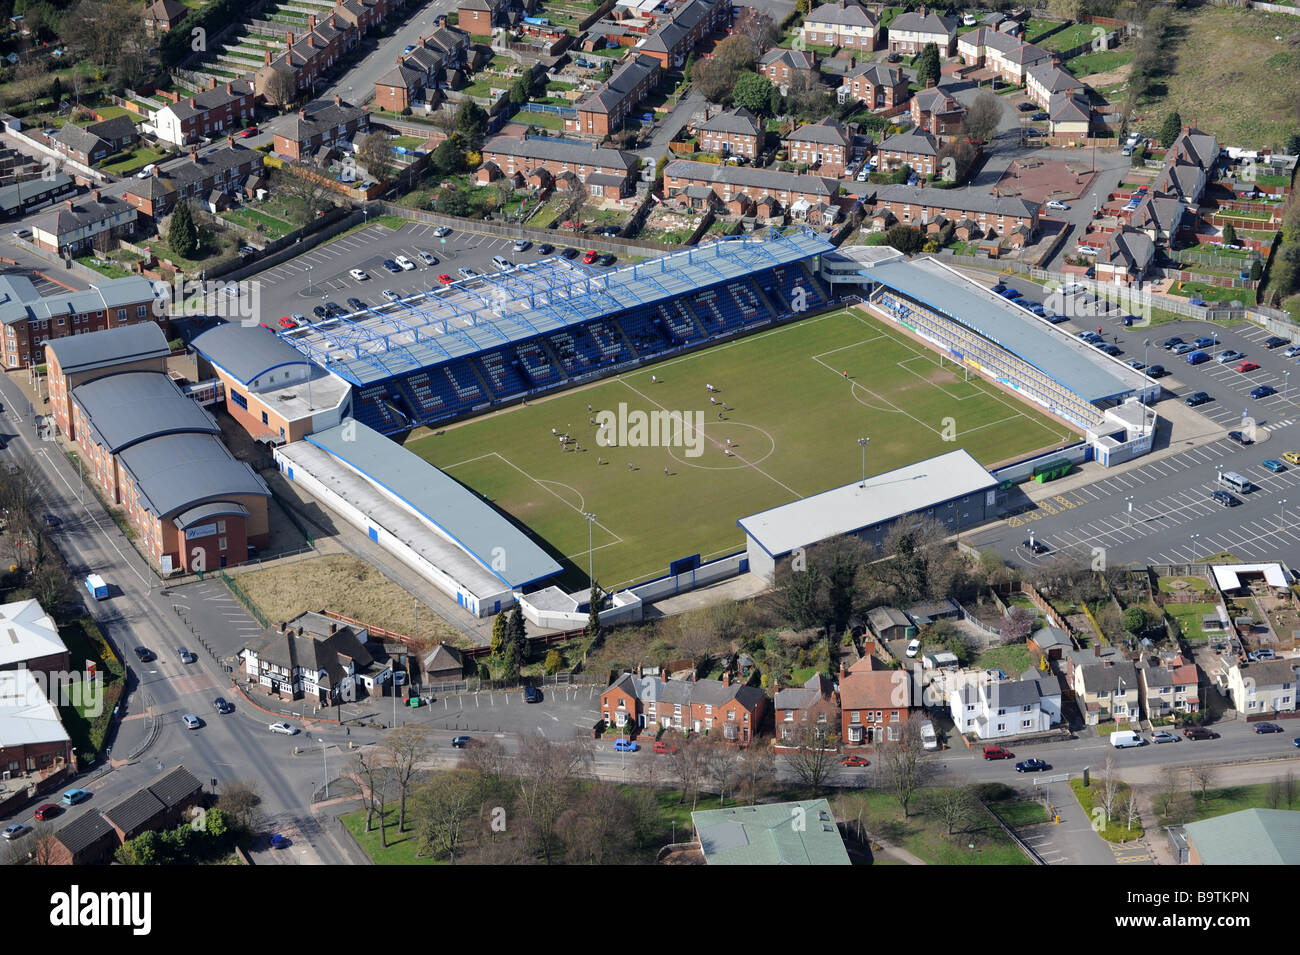 Vue aérienne de Telford United AFC stadium à Telford Shropshire England Uk Banque D'Images